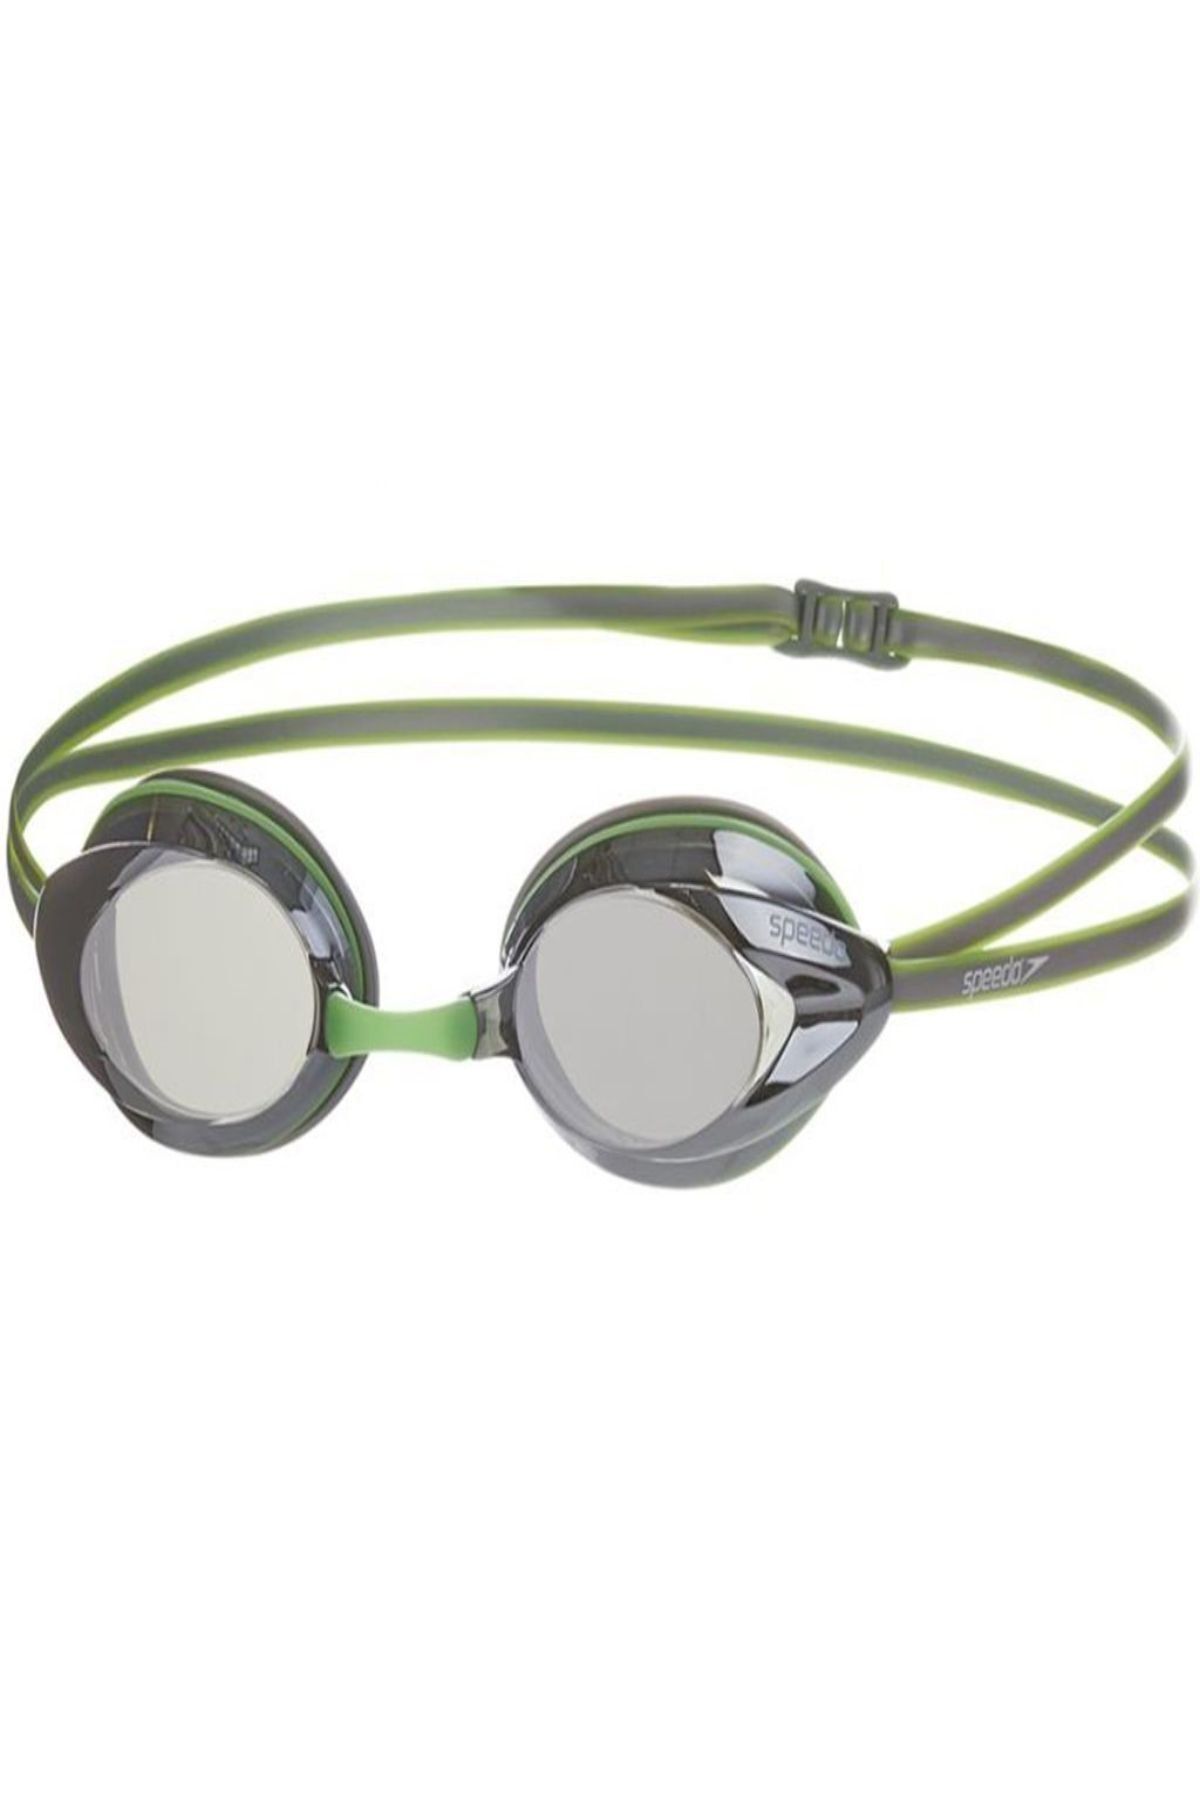 SPEEDO Opal Plus Aynalı Yüzücü Gözlüğü - Yeşil